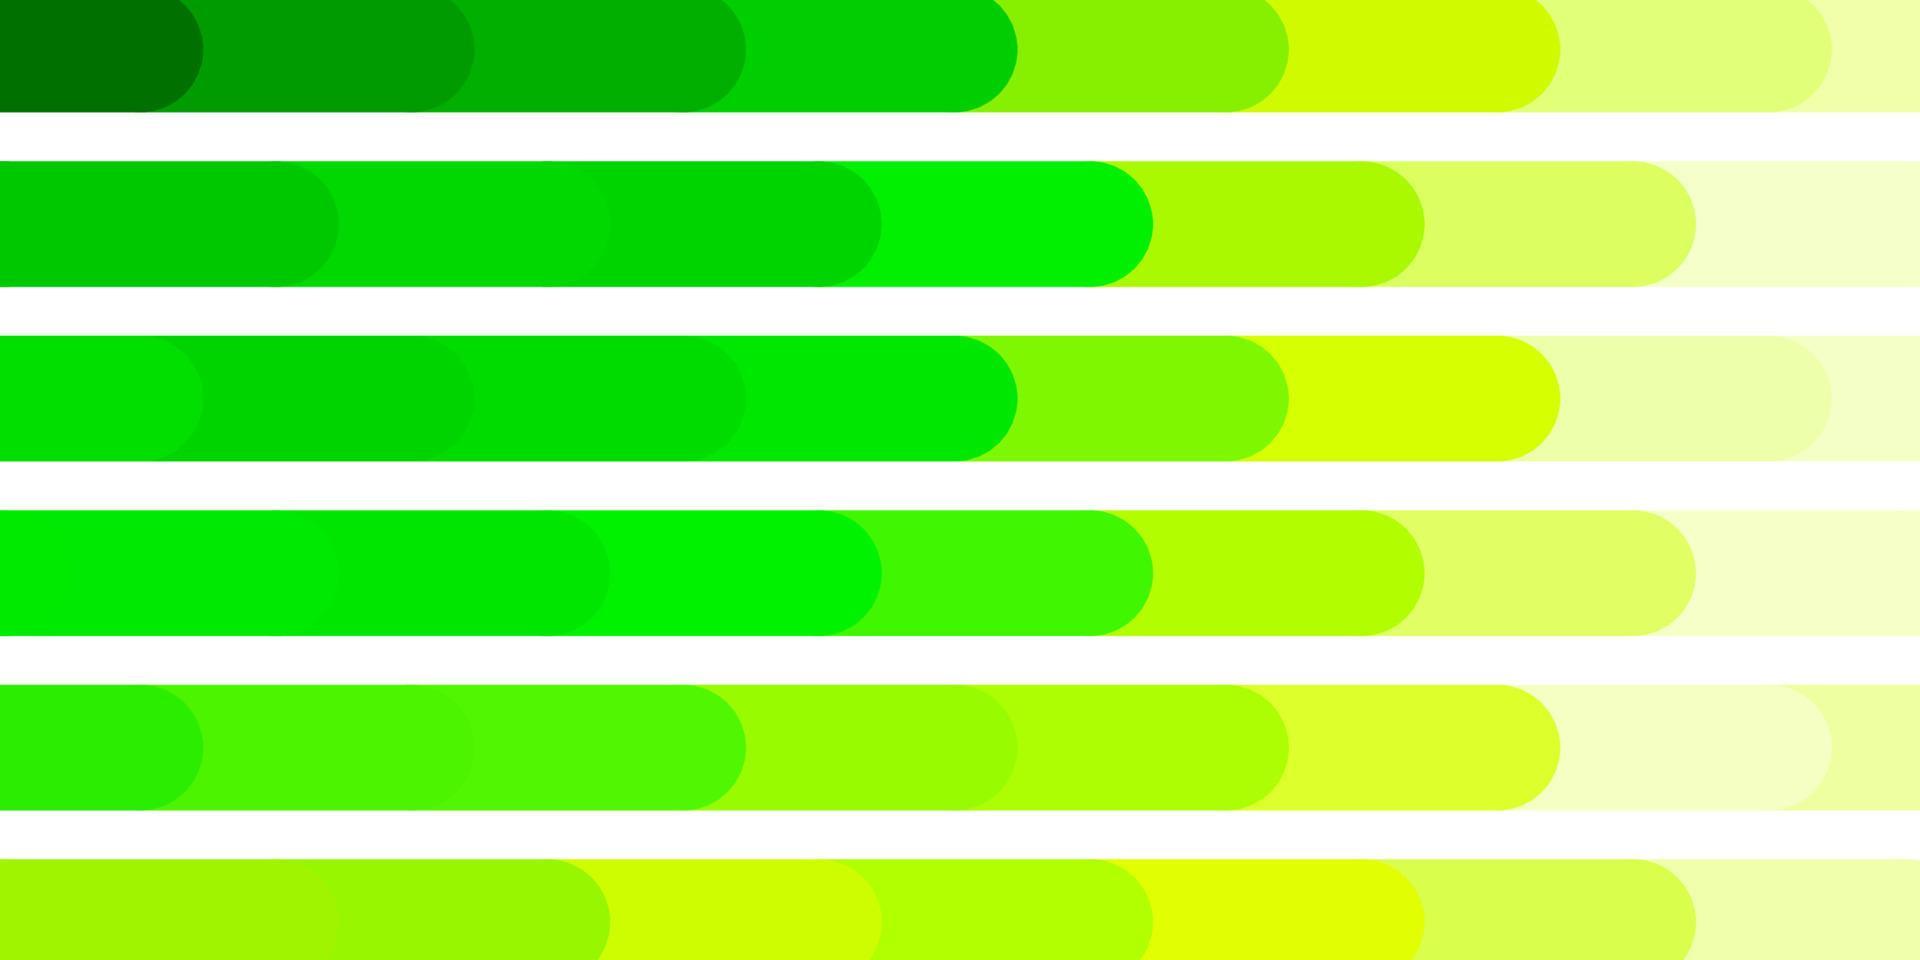 modello vettoriale verde chiaro con linee.